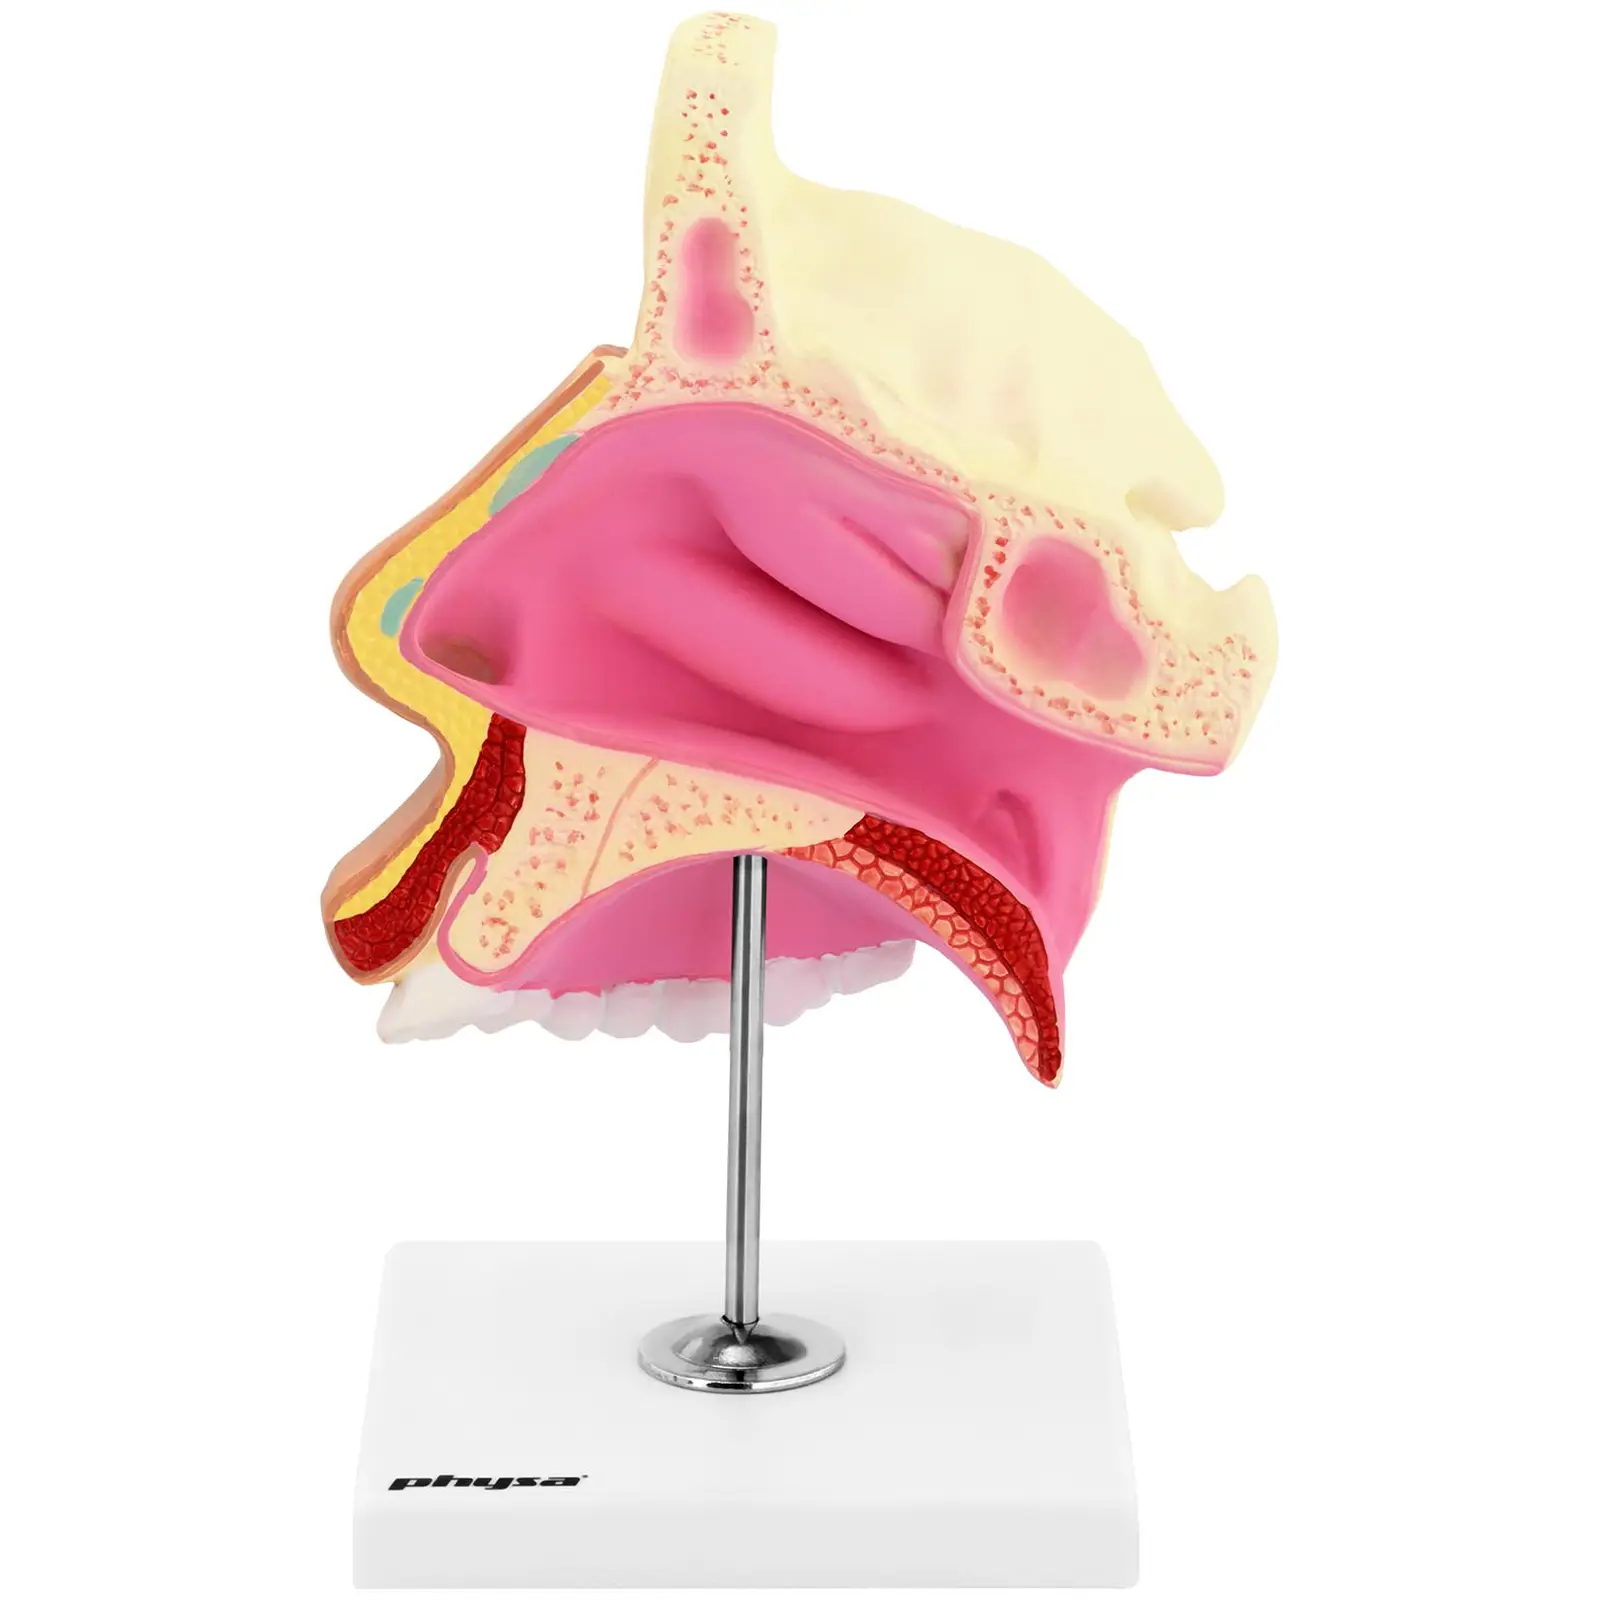 Nenäontelon anatominen malli - luonnollinen koko